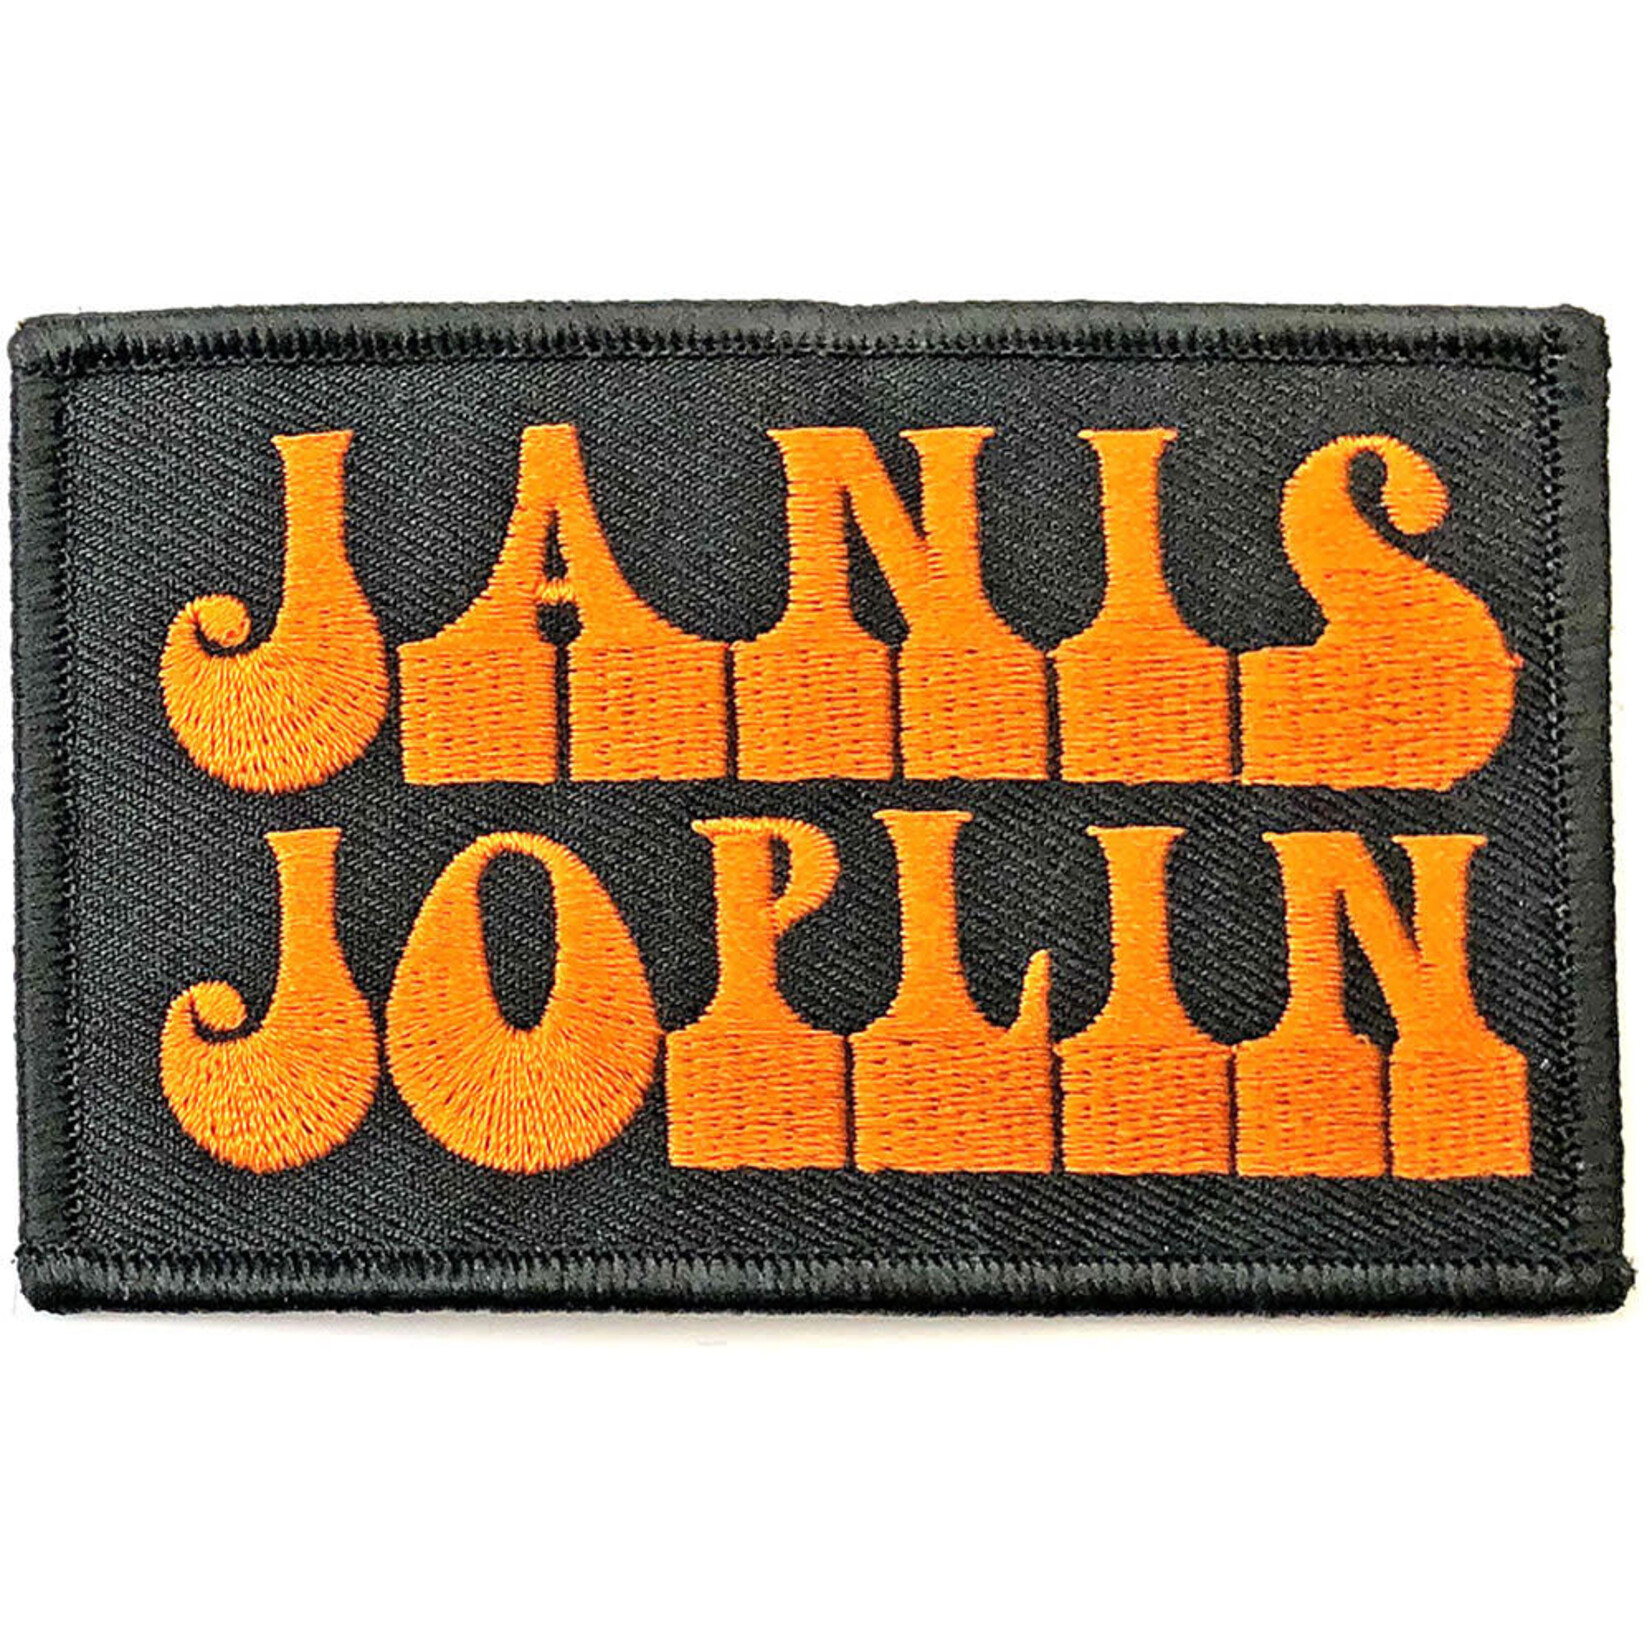 Patch - Janis Joplin: Logo